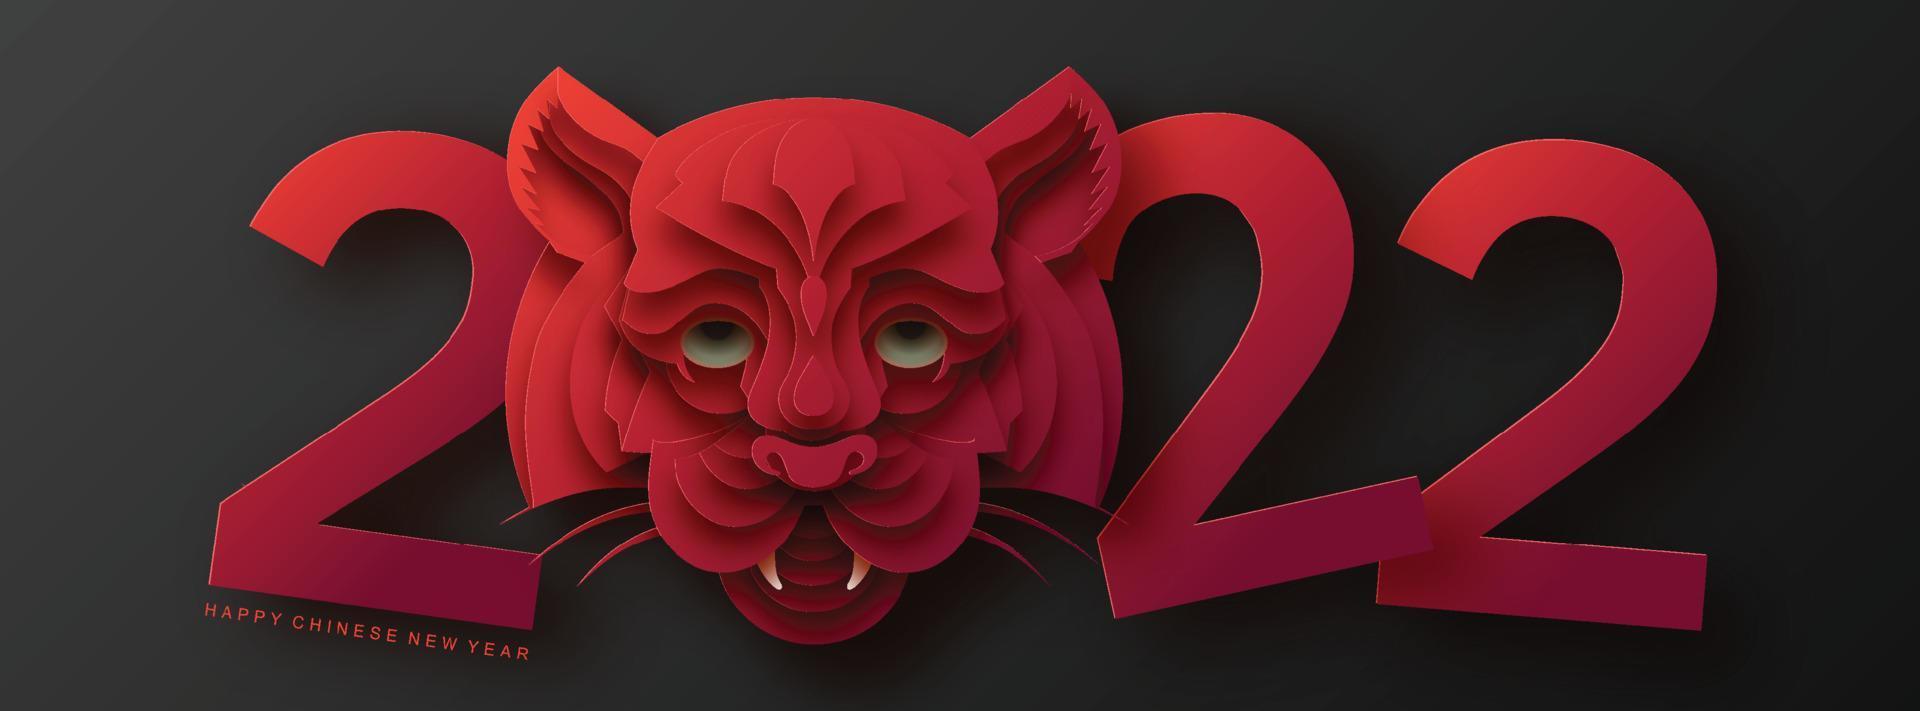 capodanno cinese 2022 anno della tigre fiore rosso e oro ed elementi asiatici carta tagliata con stile artigianale sullo sfondo. vettore